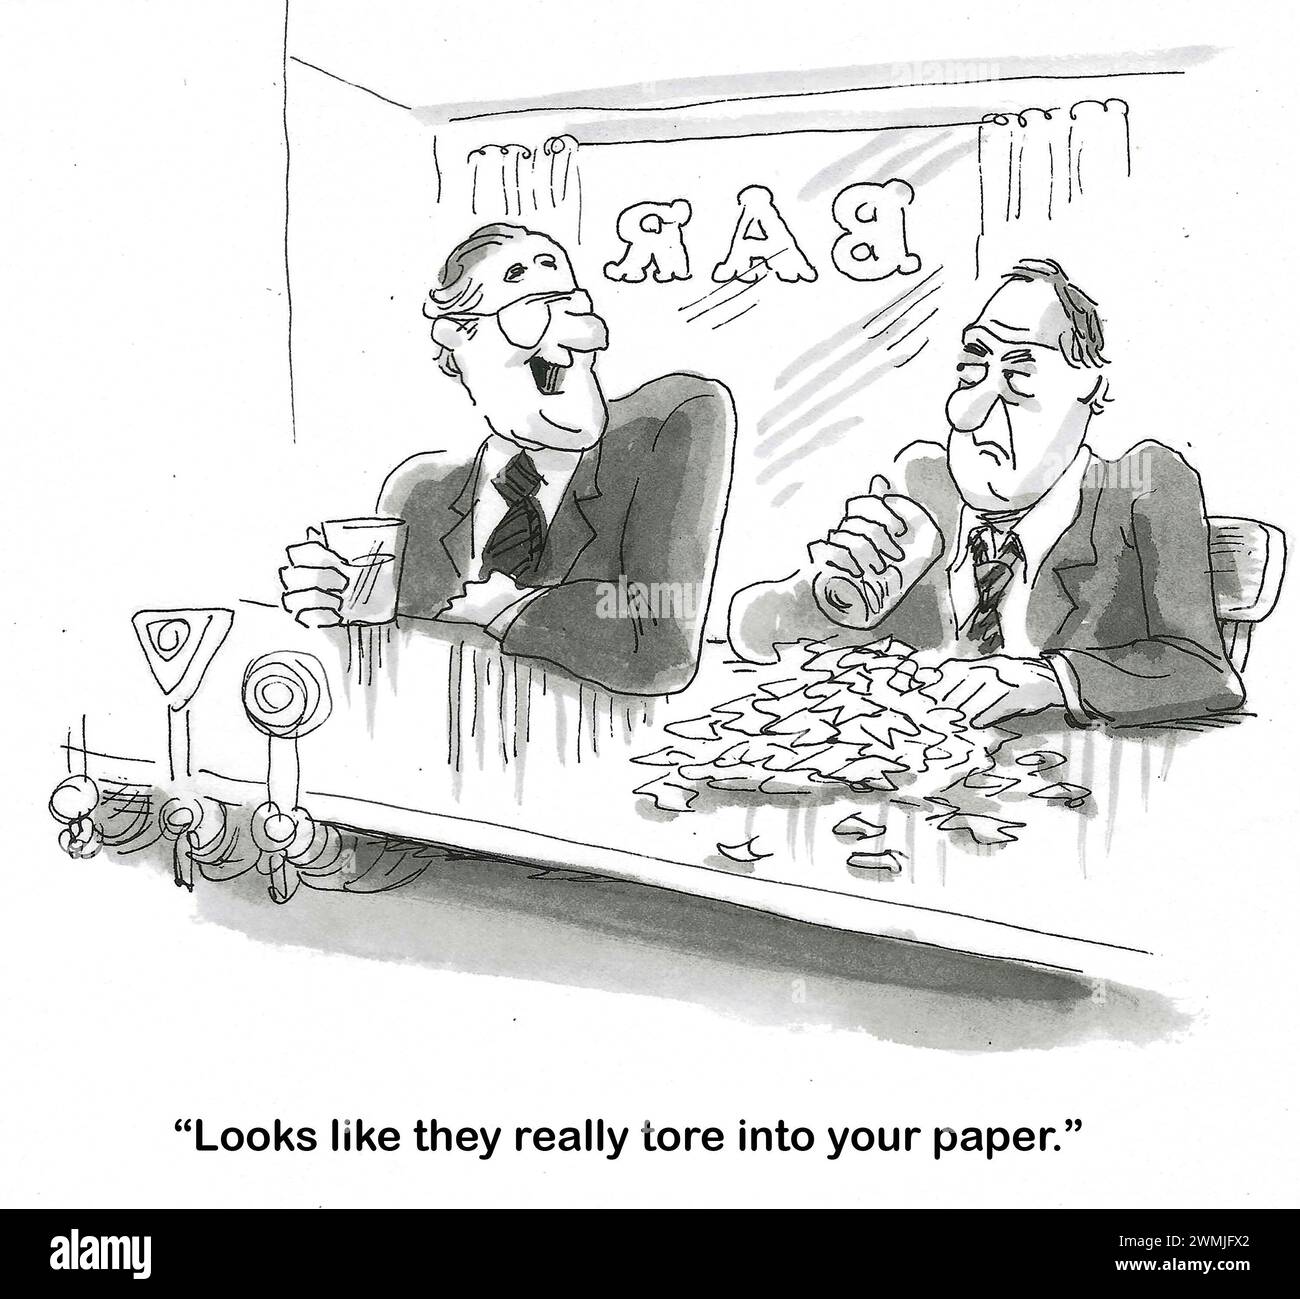 BW Cartoon von zwei Männern in einer Bar, einer hat Papierfetzen vor sich. Der andere sagt: "Sie haben Ihren Vorschlag wirklich zerrissen". Stockfoto